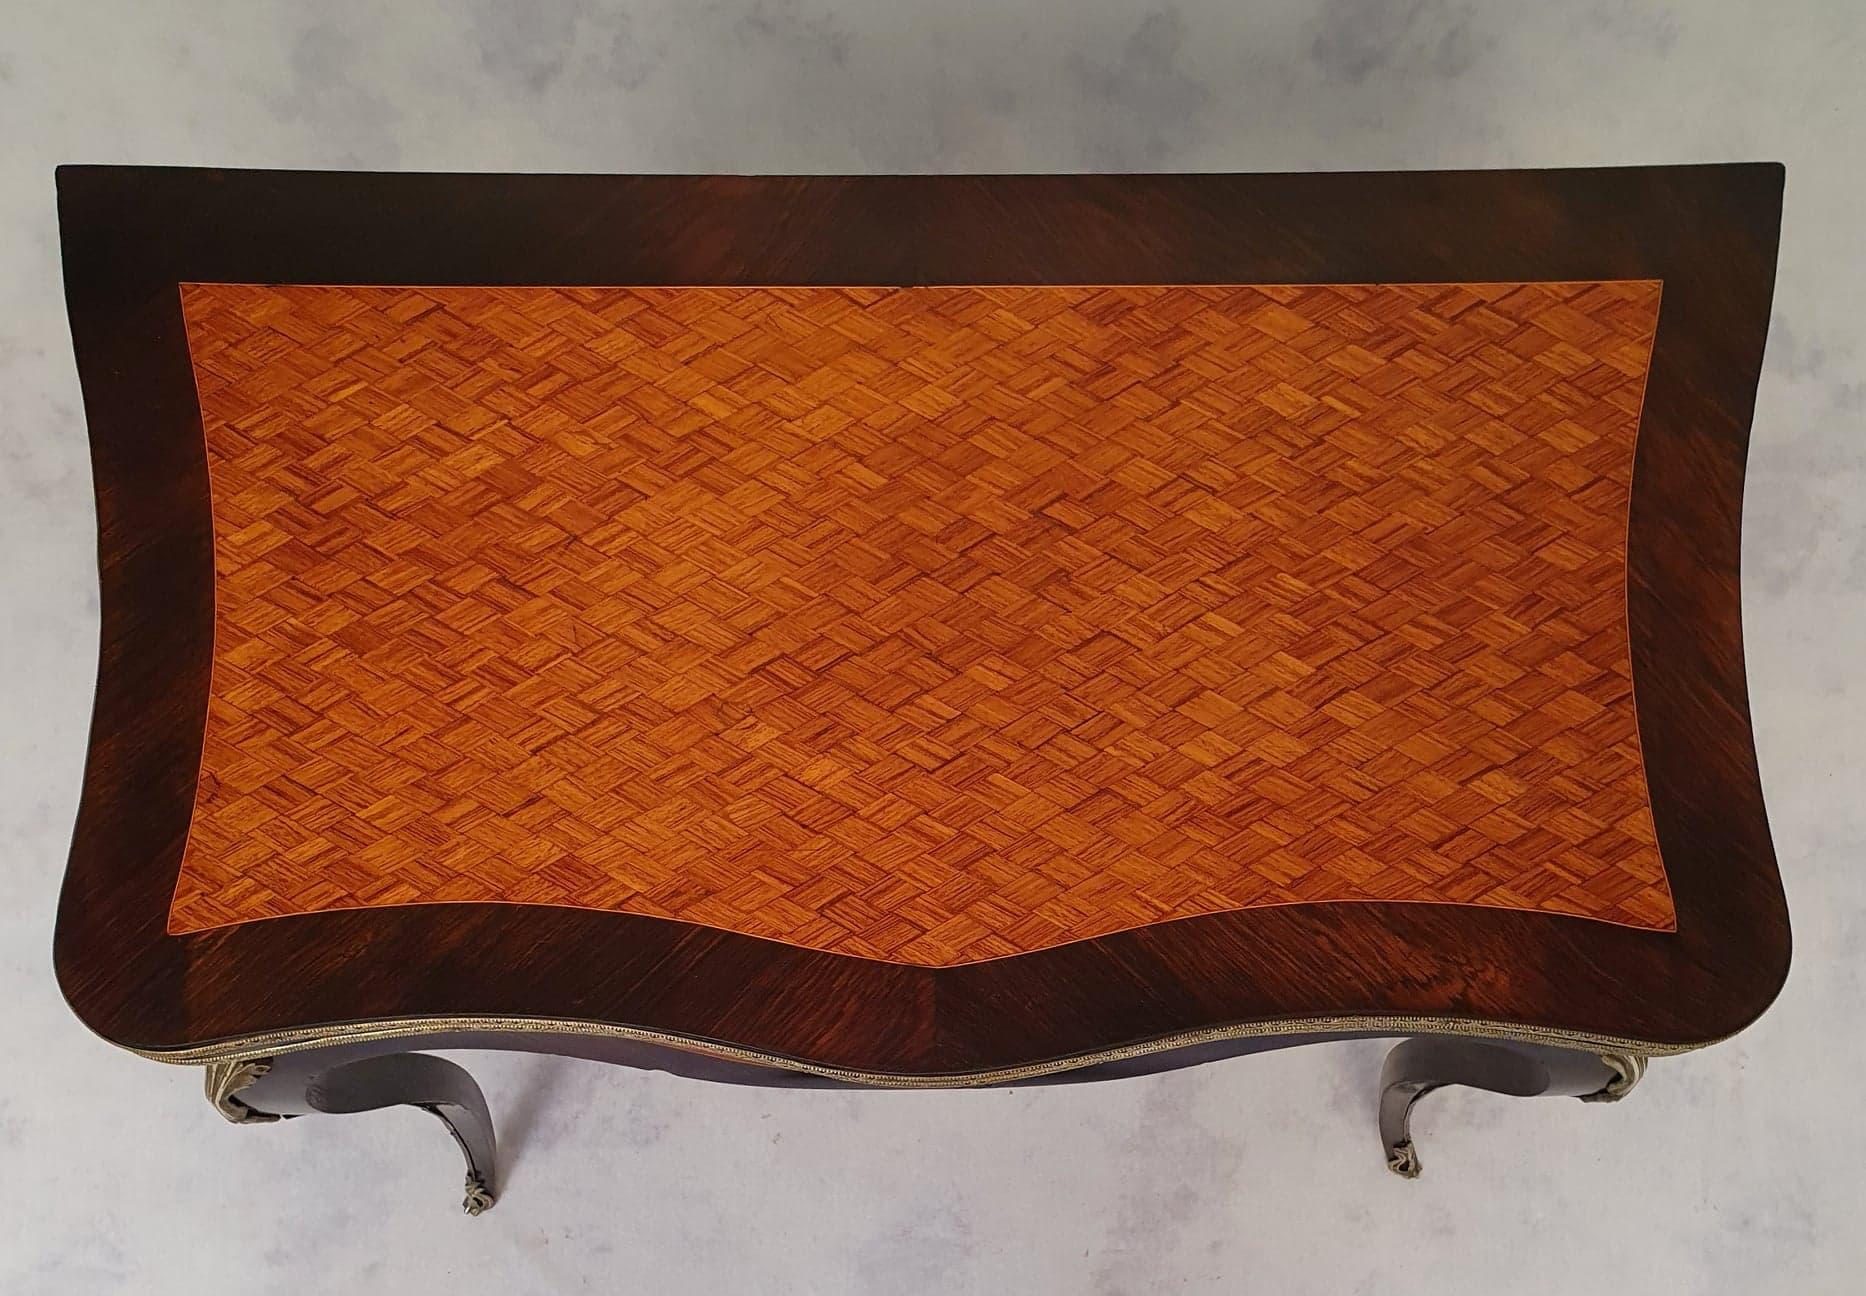 Vielseitiger Spieltisch im Stil von Louis XV, Periode Napoleon III. Dieser Tisch ist aus Palisander und Palisanderholz gearbeitet. Zwei exotische Hölzer, die oft zusammen verwendet werden, um Kontraste zu schaffen. In der Tat wird hier Palisander